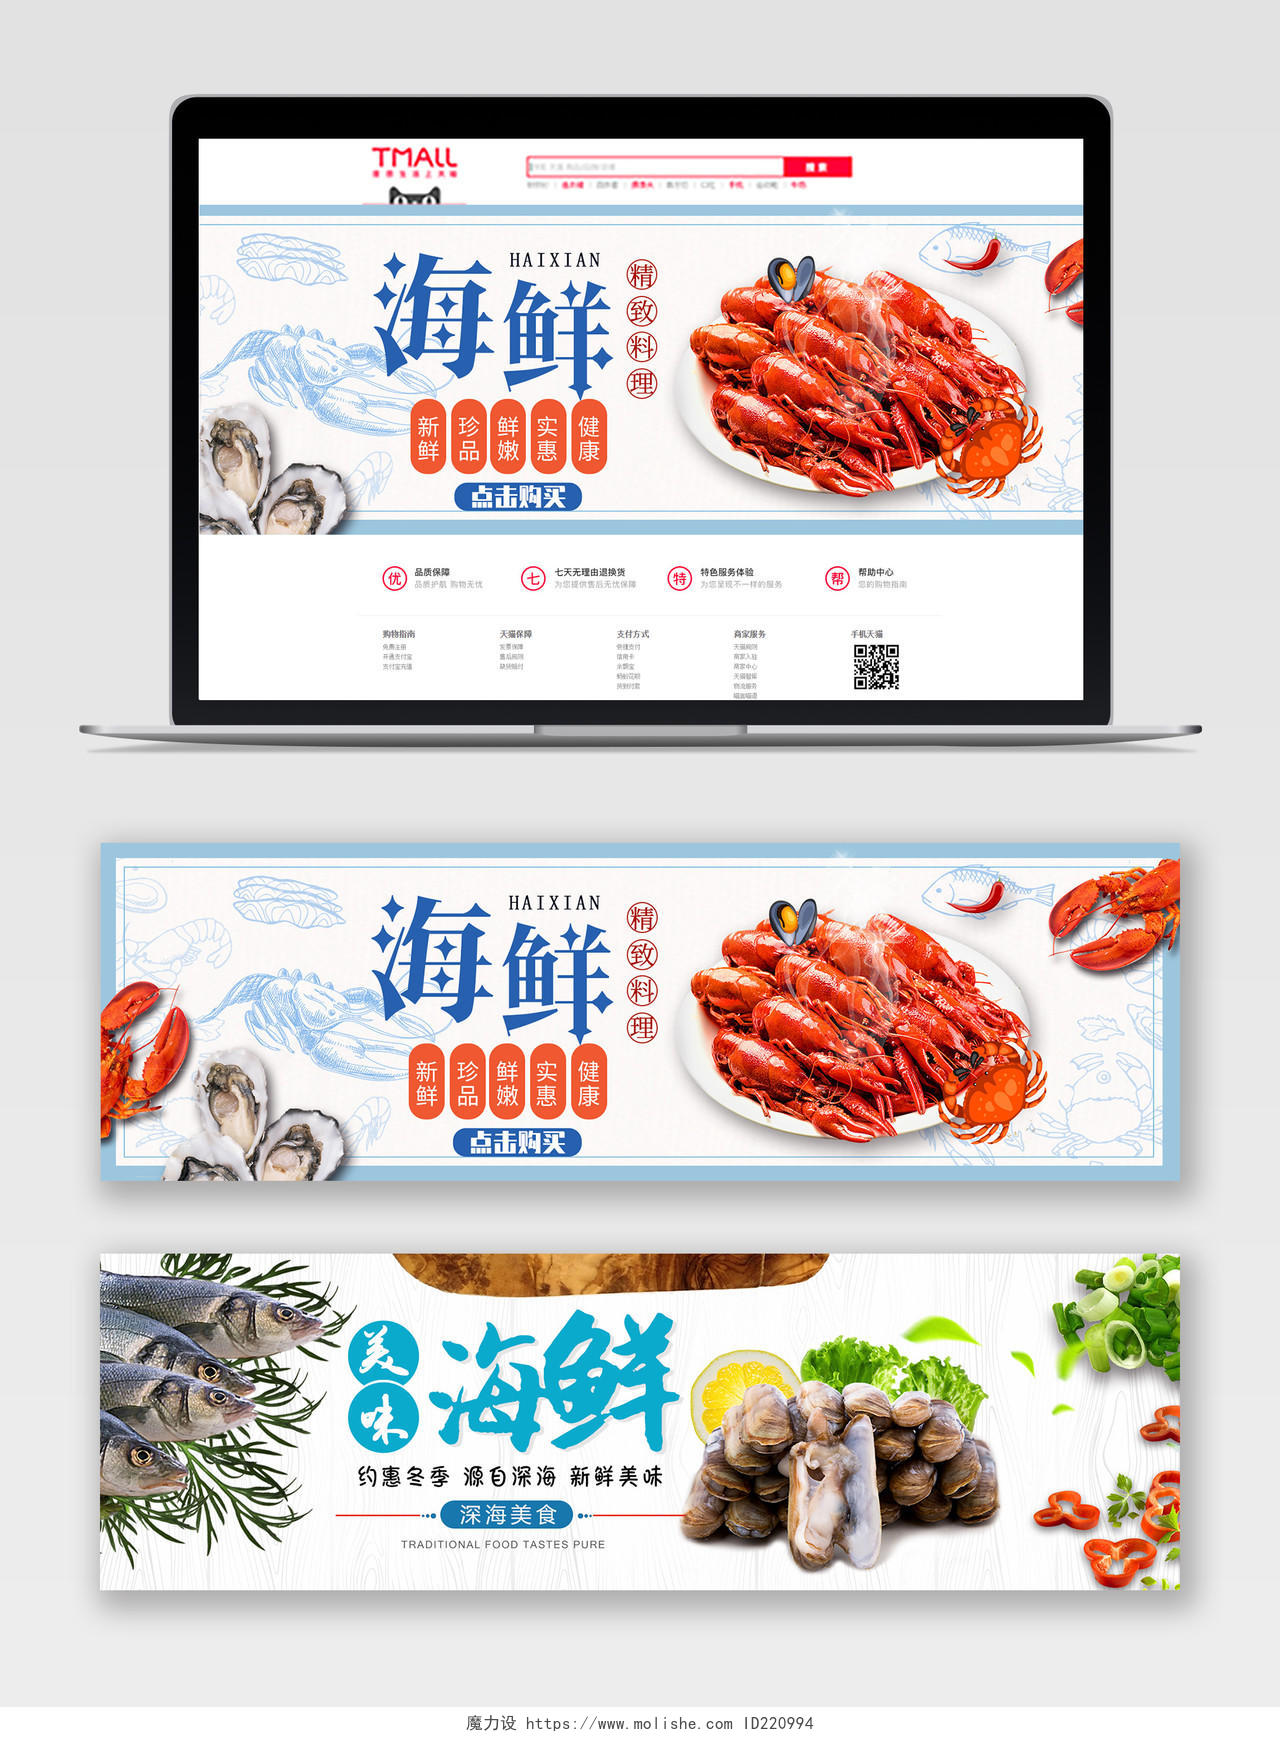 简约大气电商淘宝灰色系美味海鲜海鲜促销banner